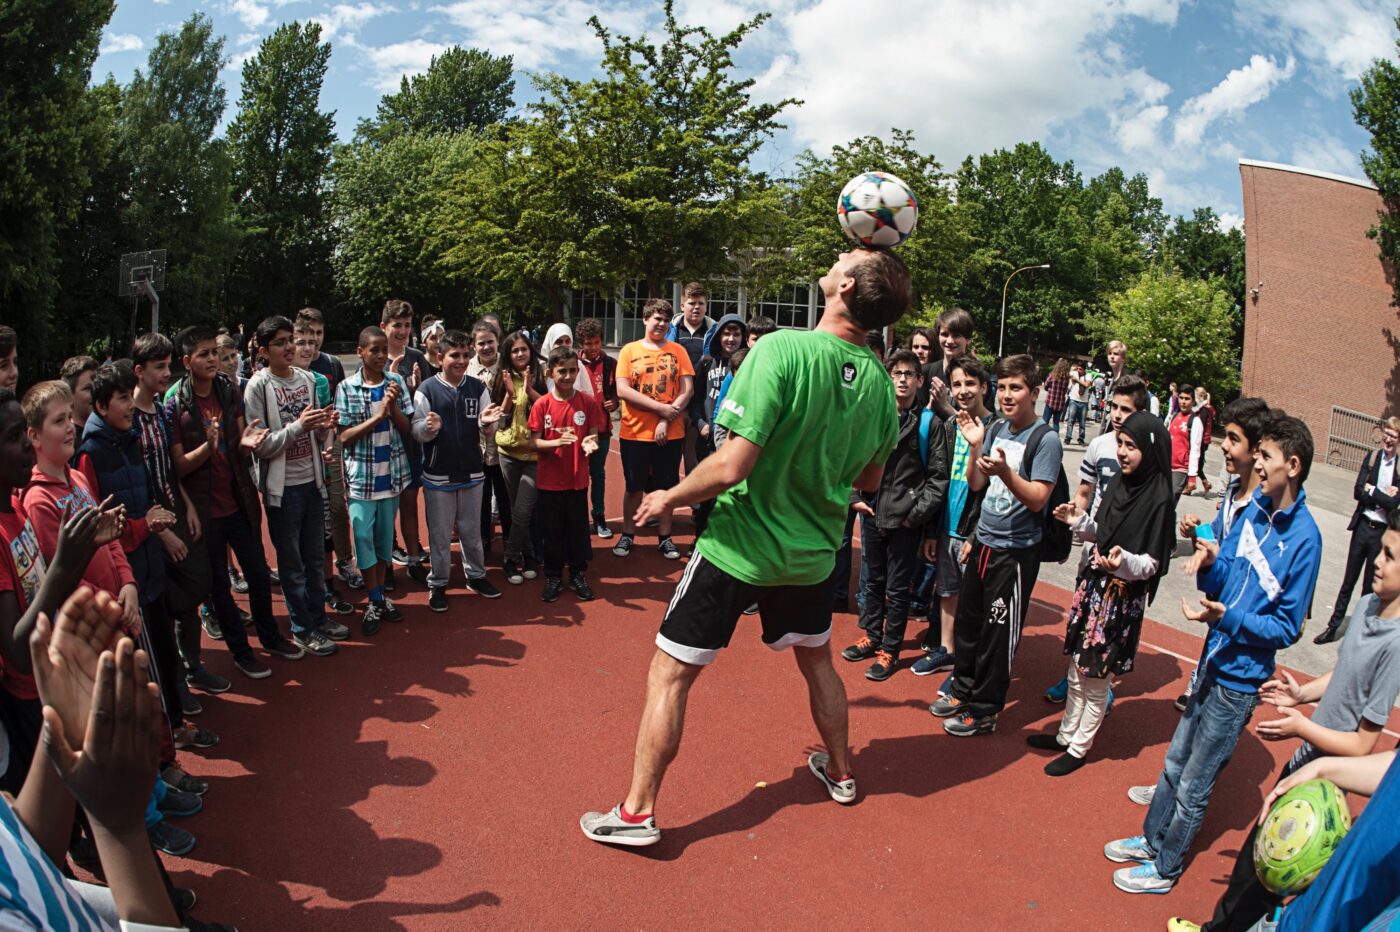 GORILLA Botschafter macht in einem Kreis von begeisterten Kindern einen Trick indem er mit dem Kopf einen Fußball jongliert.